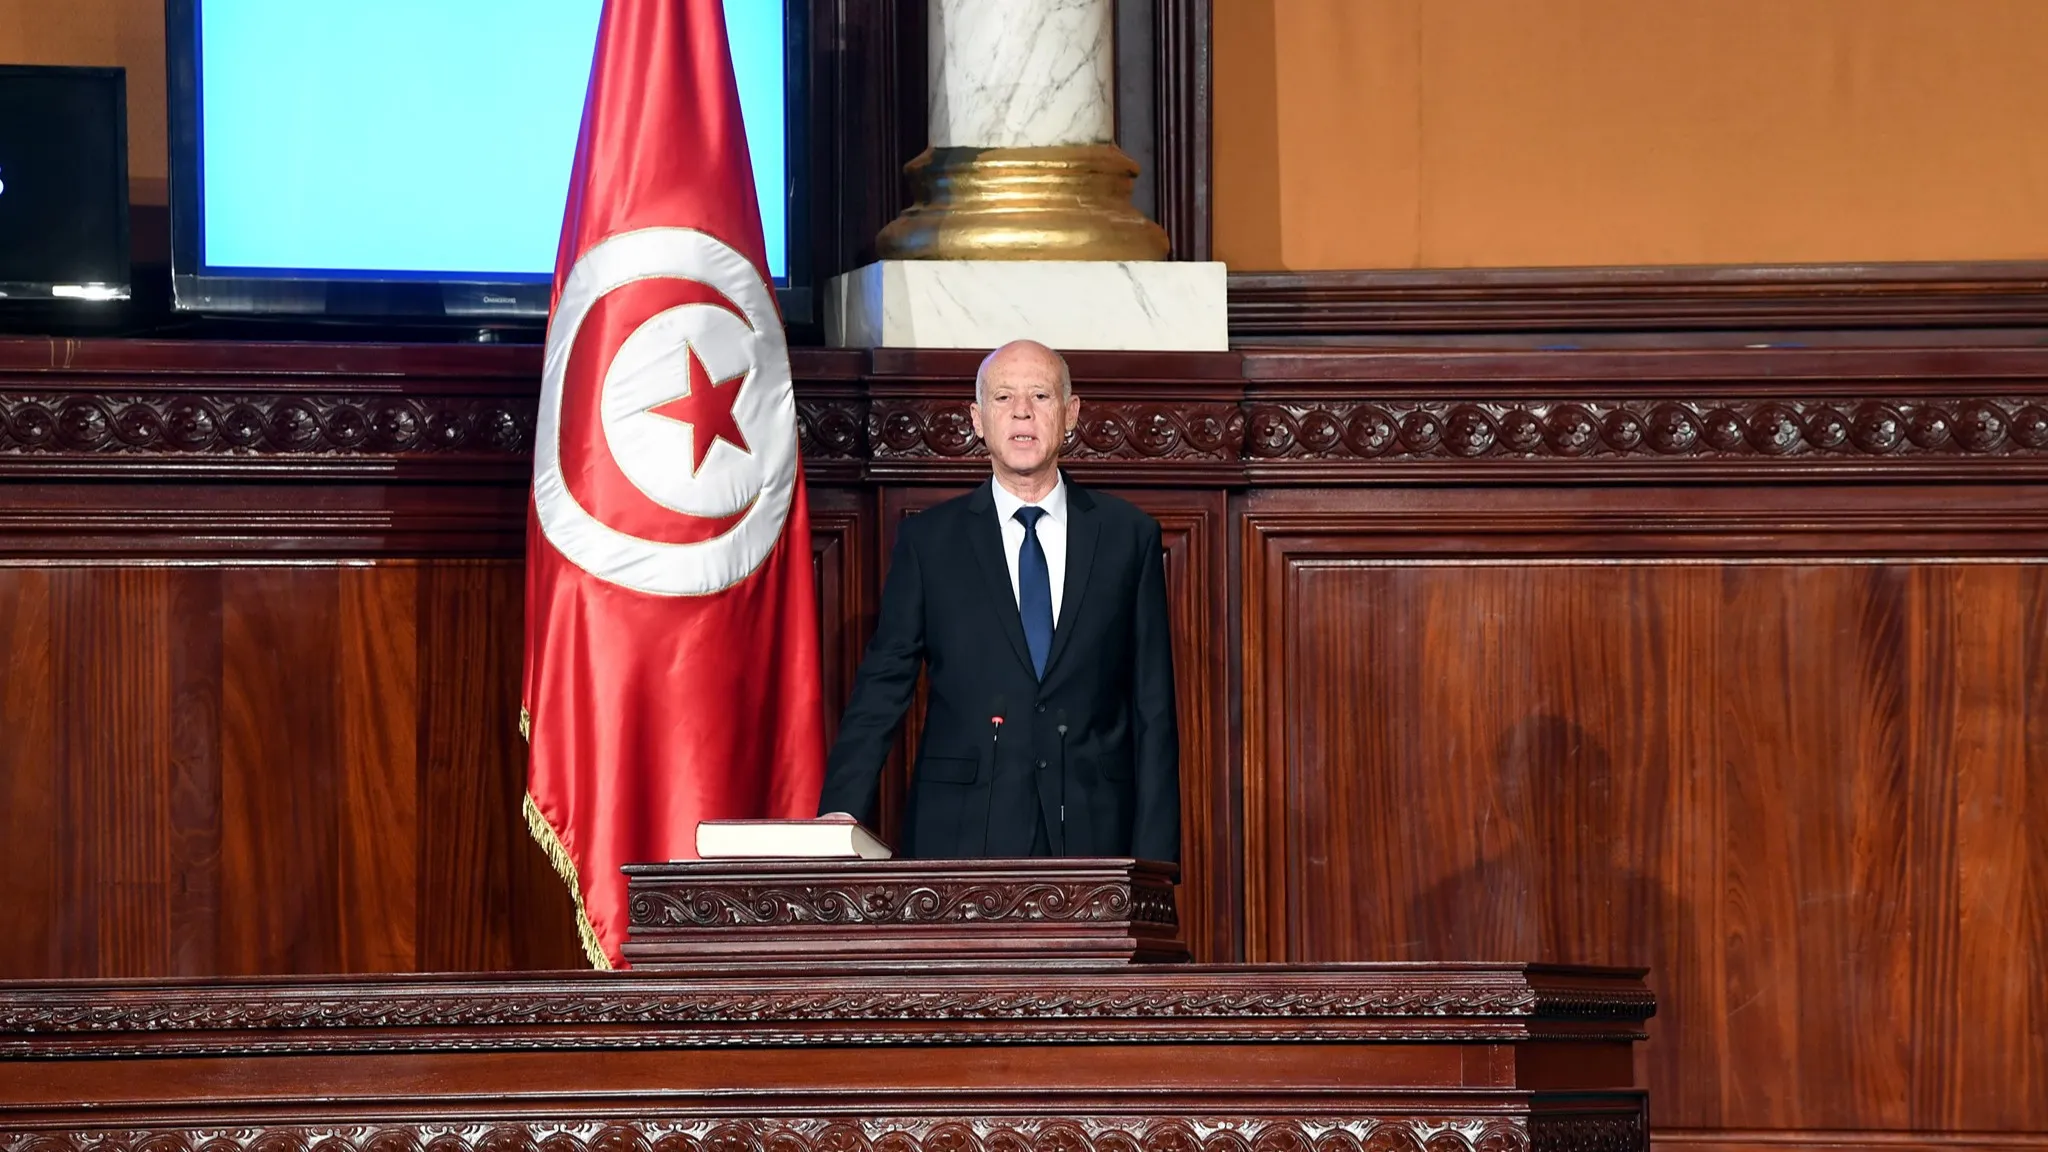 Tunisie : une immigration source de 'violence et de crimes' ou